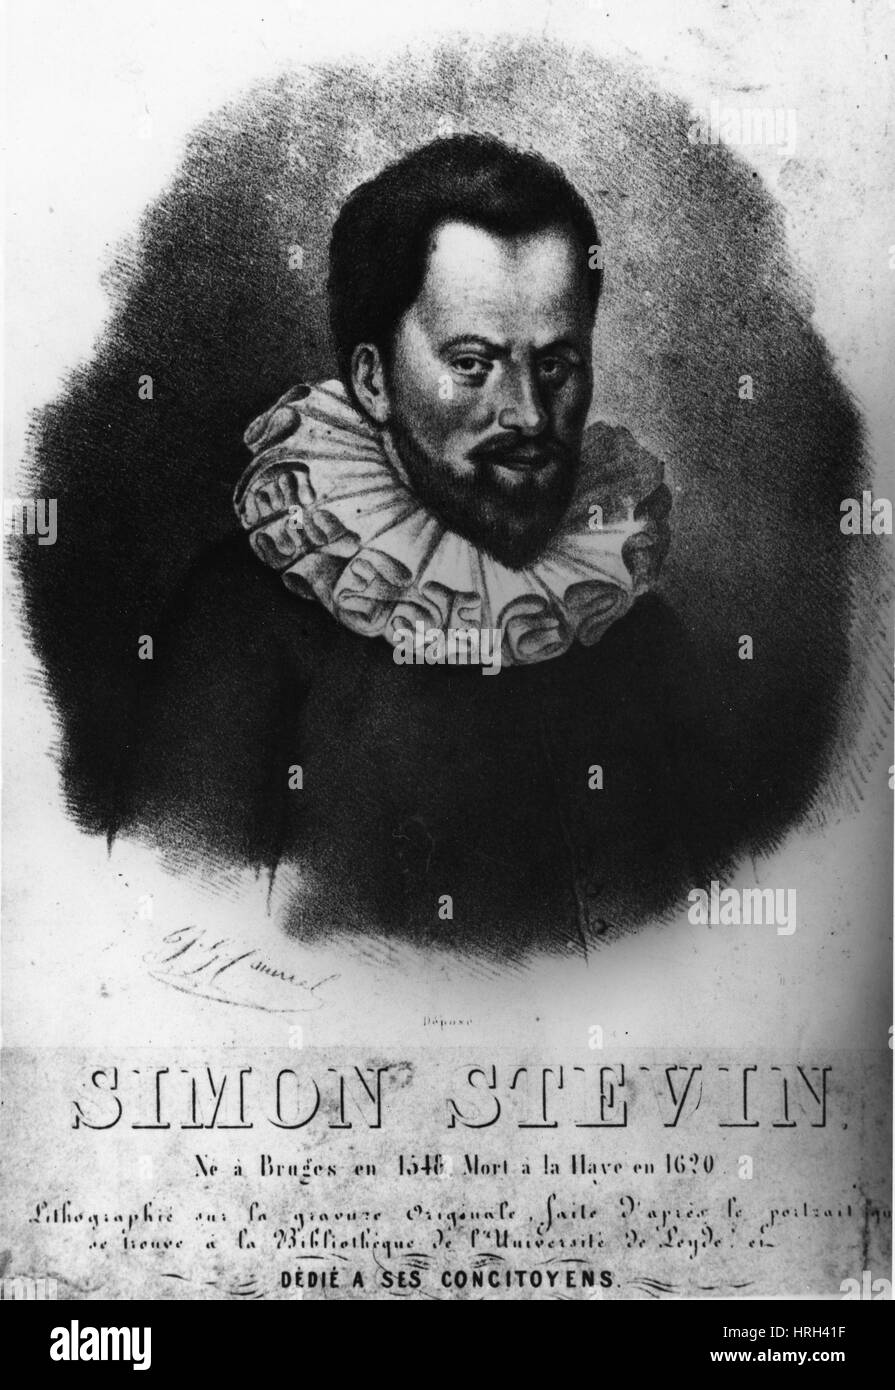 Симон стевин. Бельгийский ученый Симон Стевин. Нидерландский математик Симон Стевин. Симон Стевин (1548-1620 г.г.).